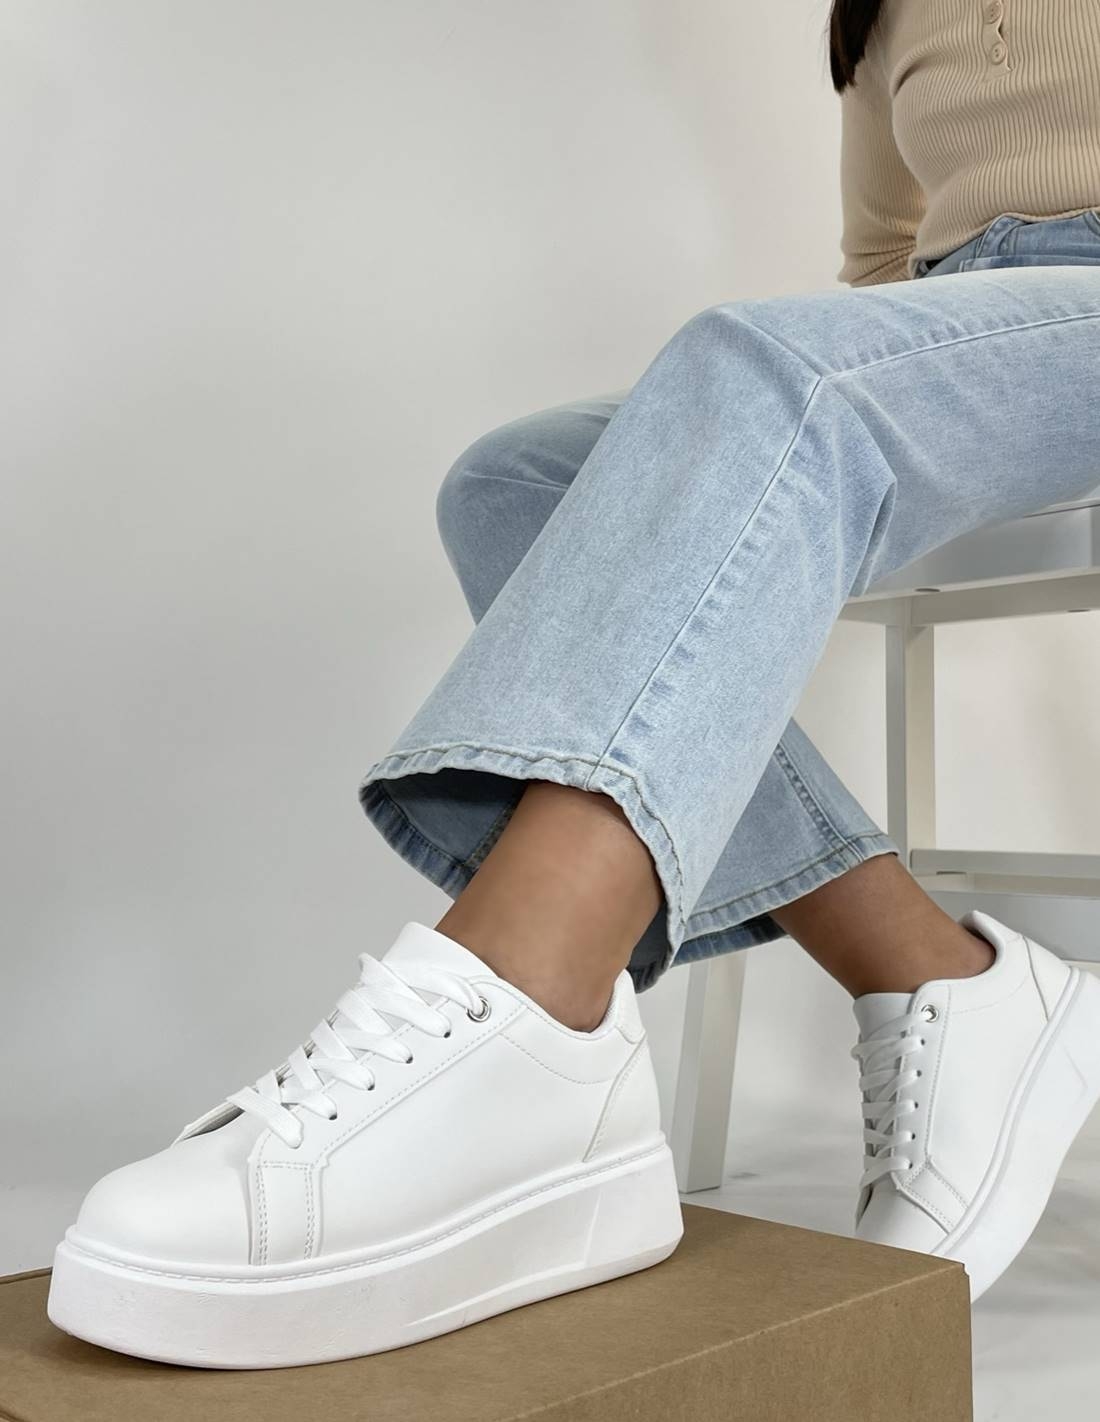 MD Zapatillas mujer blancas con plataforma caña baja livianas